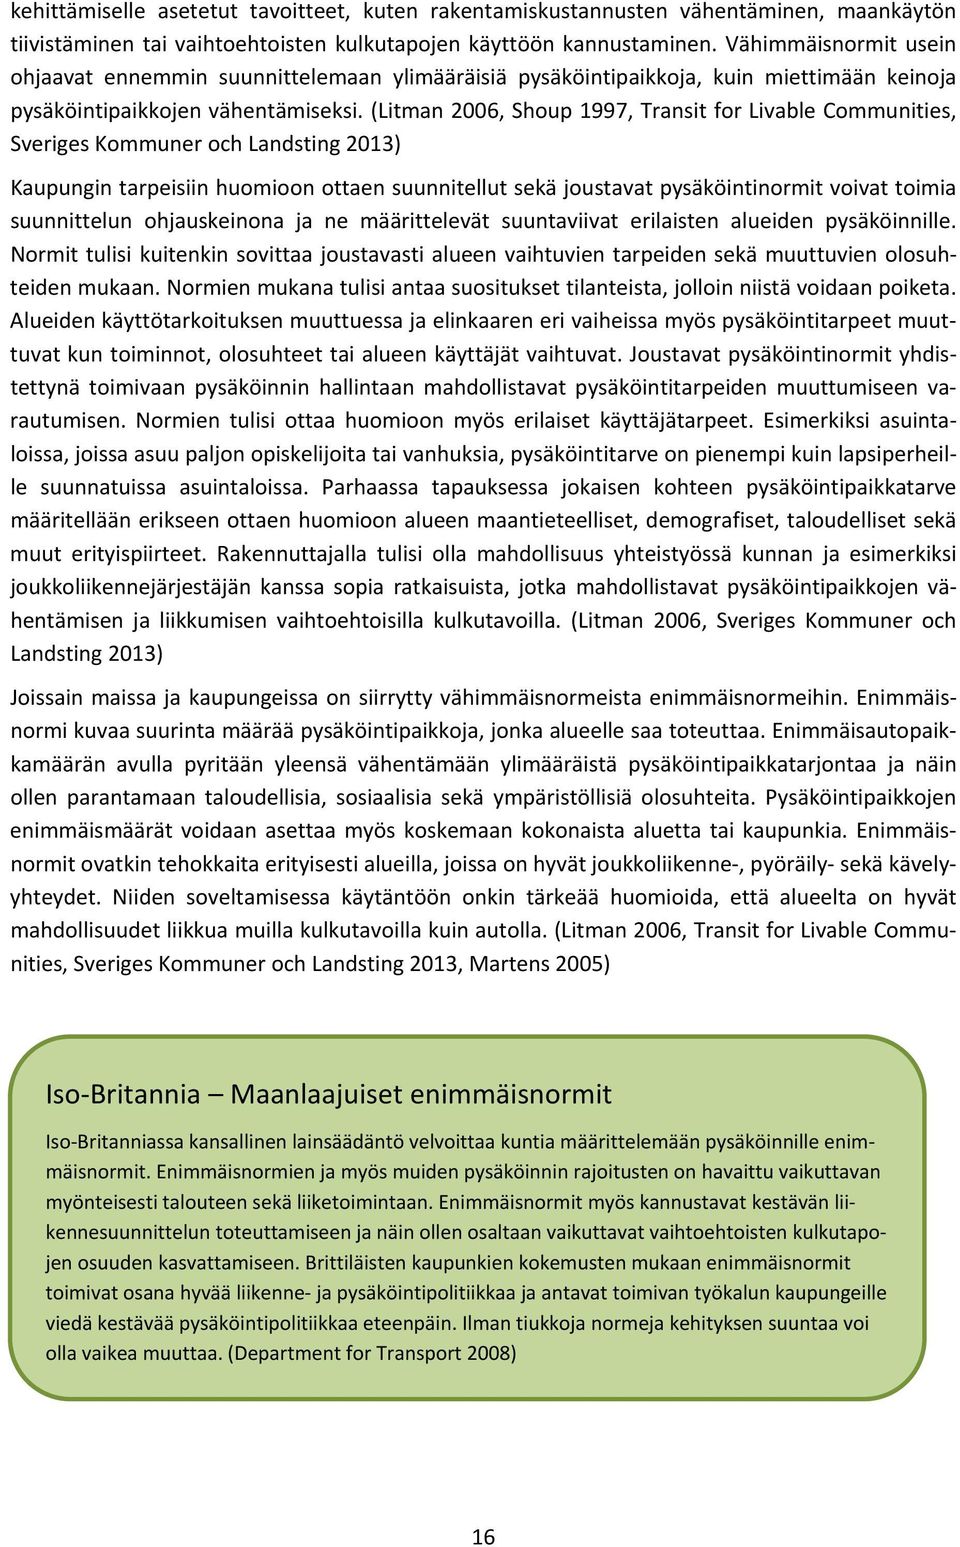 (Litman 2006, Shoup 1997, Transit for Livable Communities, Sveriges Kommuner och Landsting 2013) Kaupungin tarpeisiin huomioon ottaen suunnitellut sekä joustavat pysäköintinormit voivat toimia